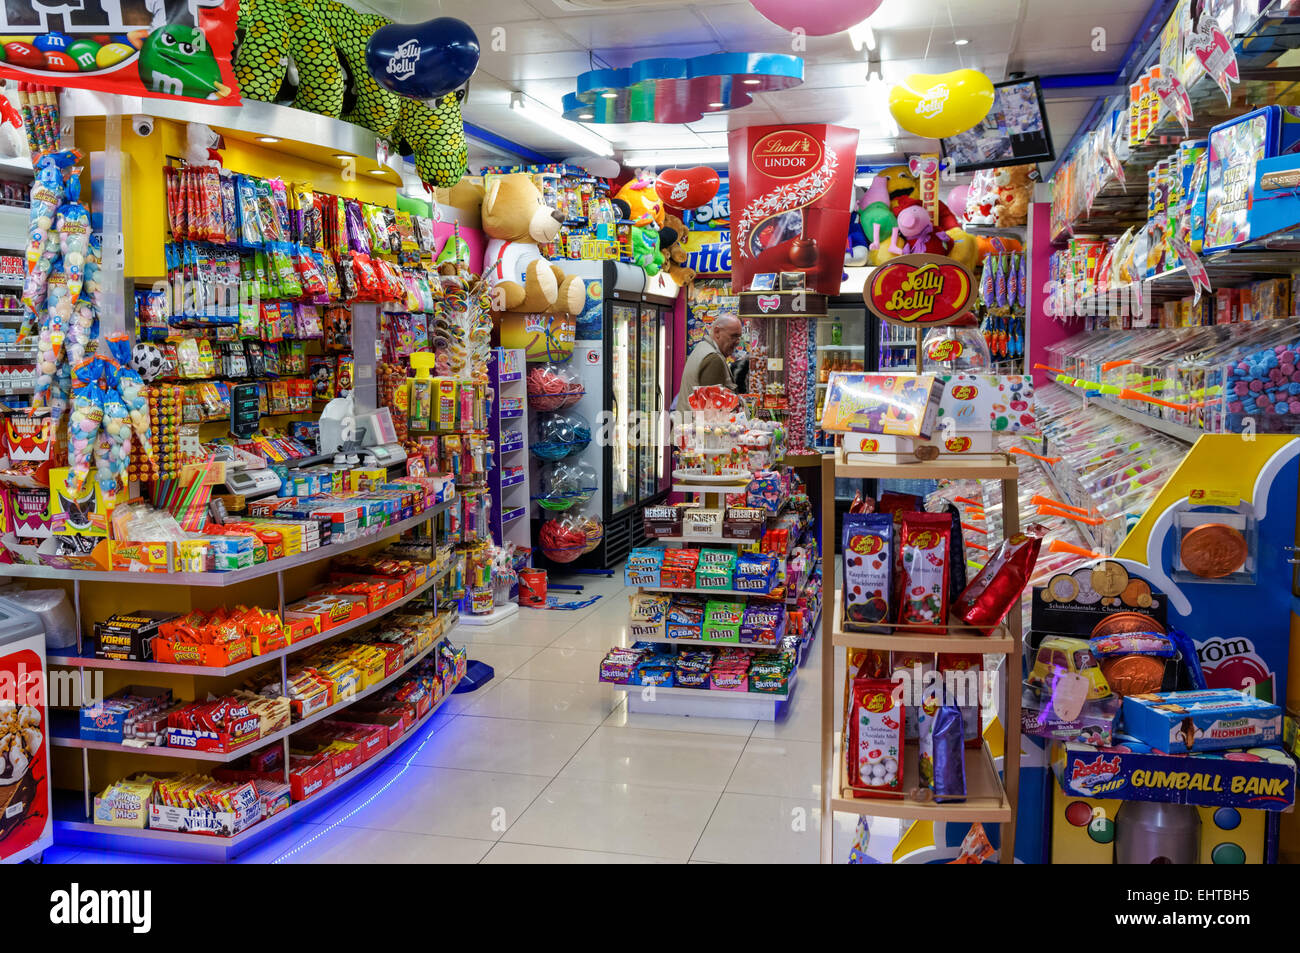 Sweet Shop in London England United Kingdom UK Stock Photo, Royalty Free Image: 79826577 - Alamy